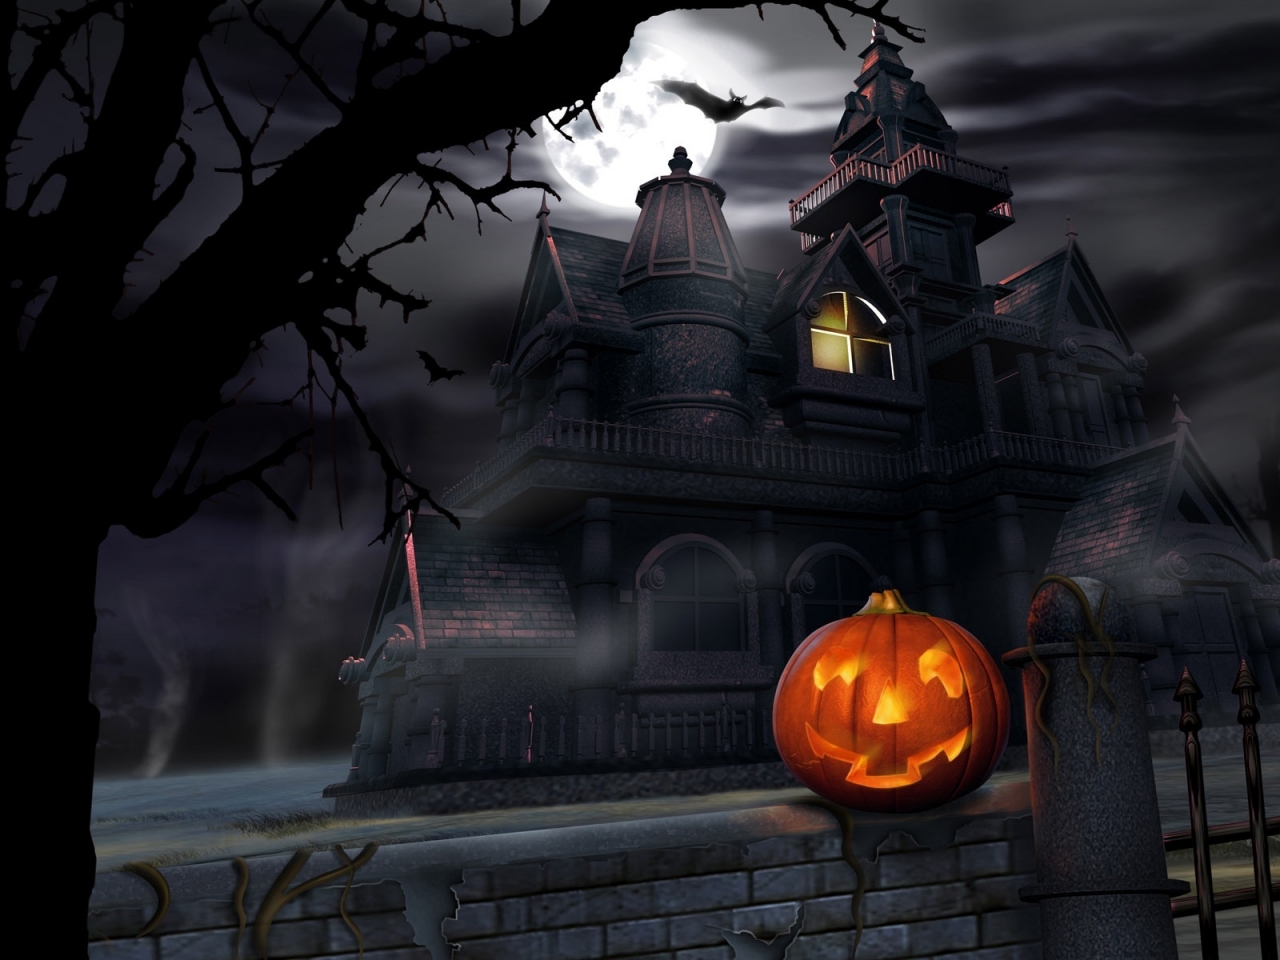 Pumpkin in Haloween dark night for 1280 x 960 resolution